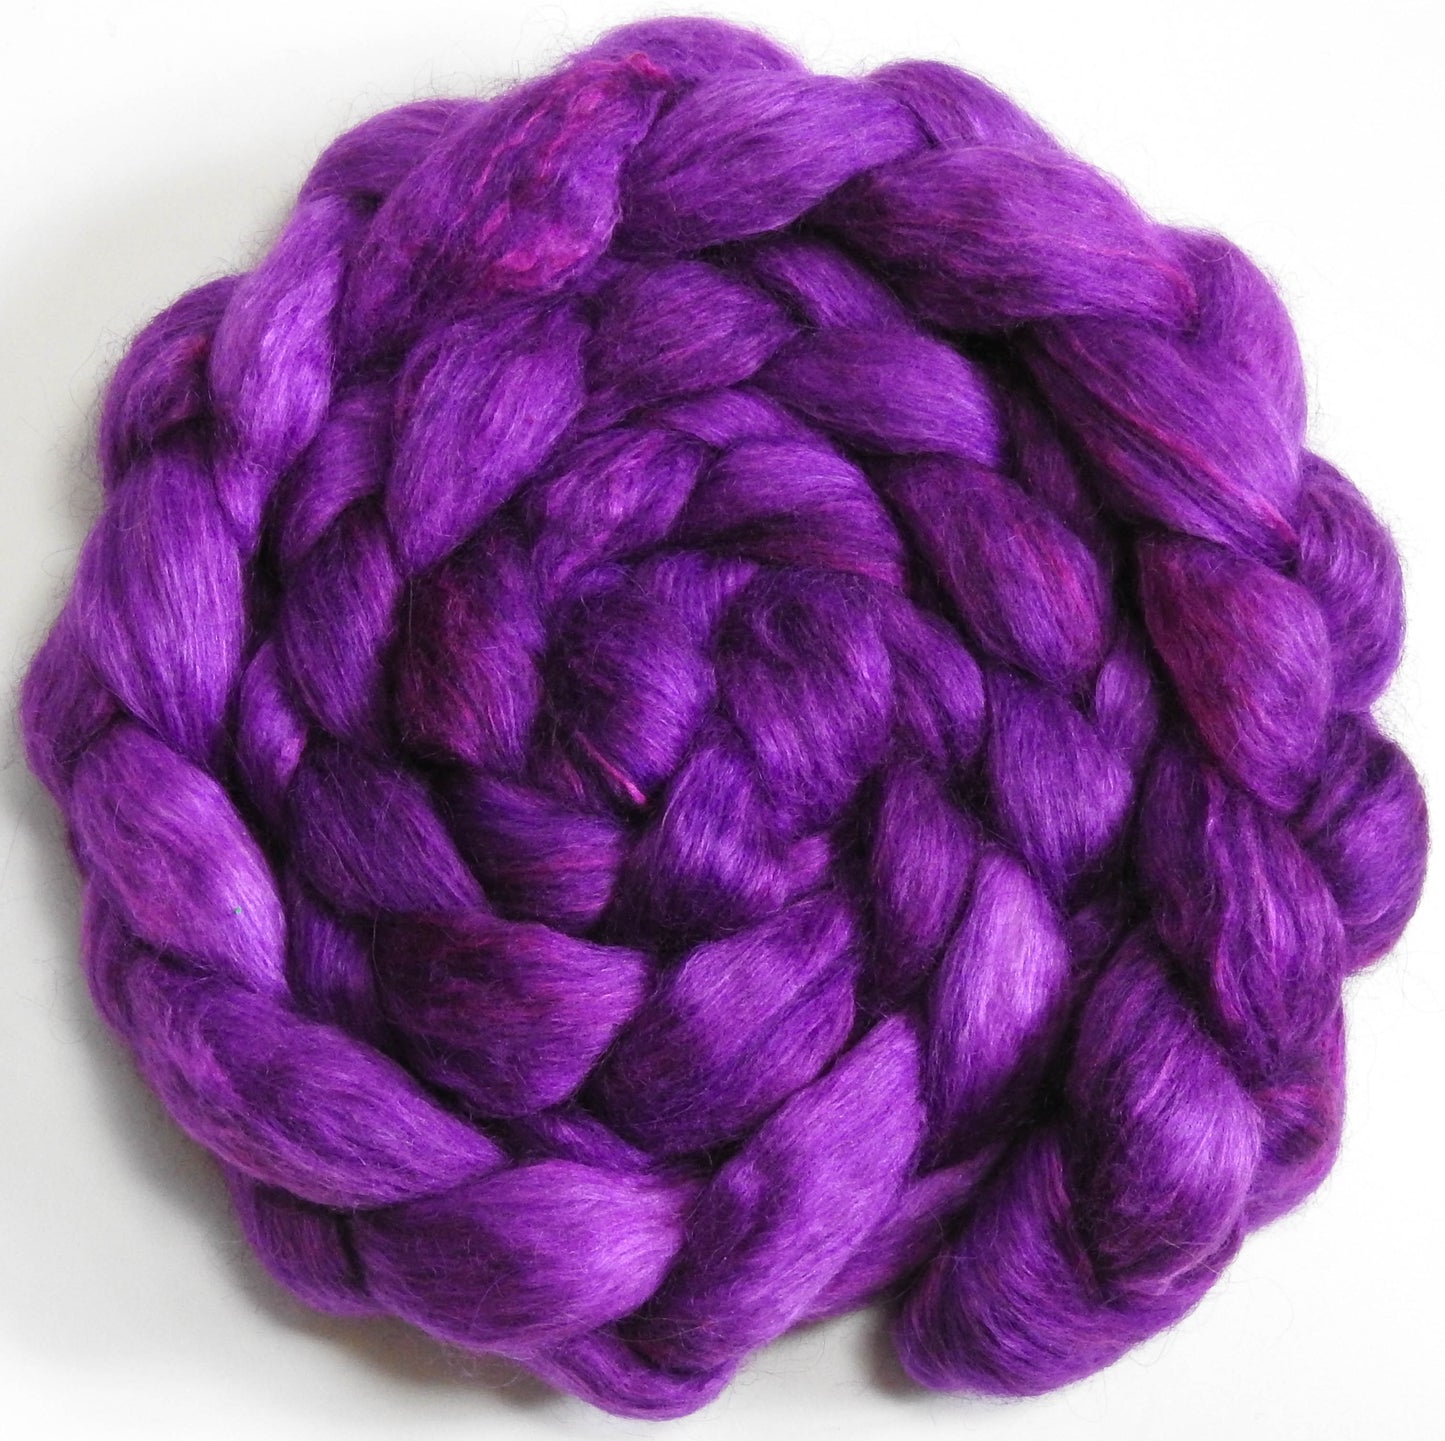 Tyrian Purple (5.9 oz) - Batt in a Braid #52- Wensleydale/ Mulberry silk/ Polwarth (60/25/15)